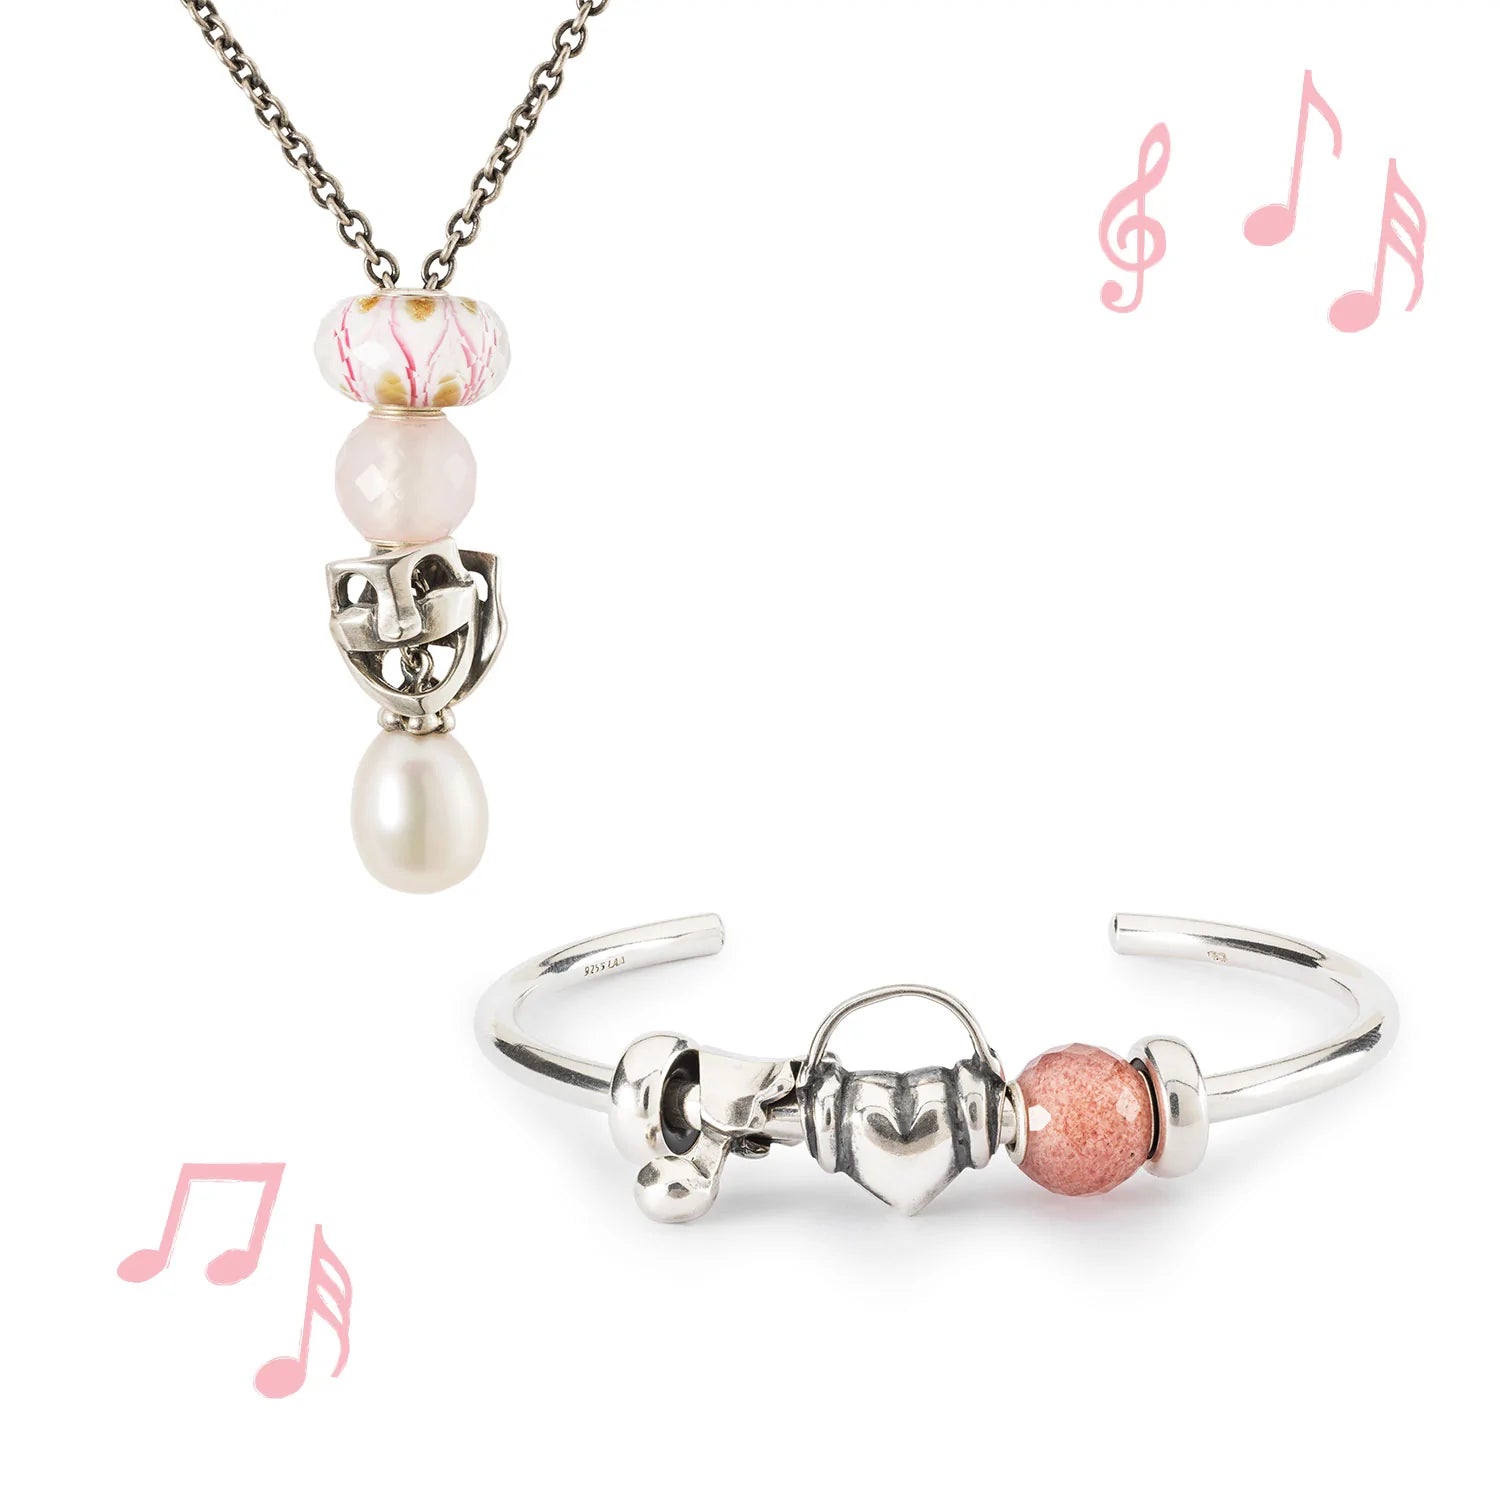 Trollbeads Armspange und Halskette mit Glas-, Silber-, Edelstein- und Perlenbeads, alle mit einem Musik- und Theaterthema